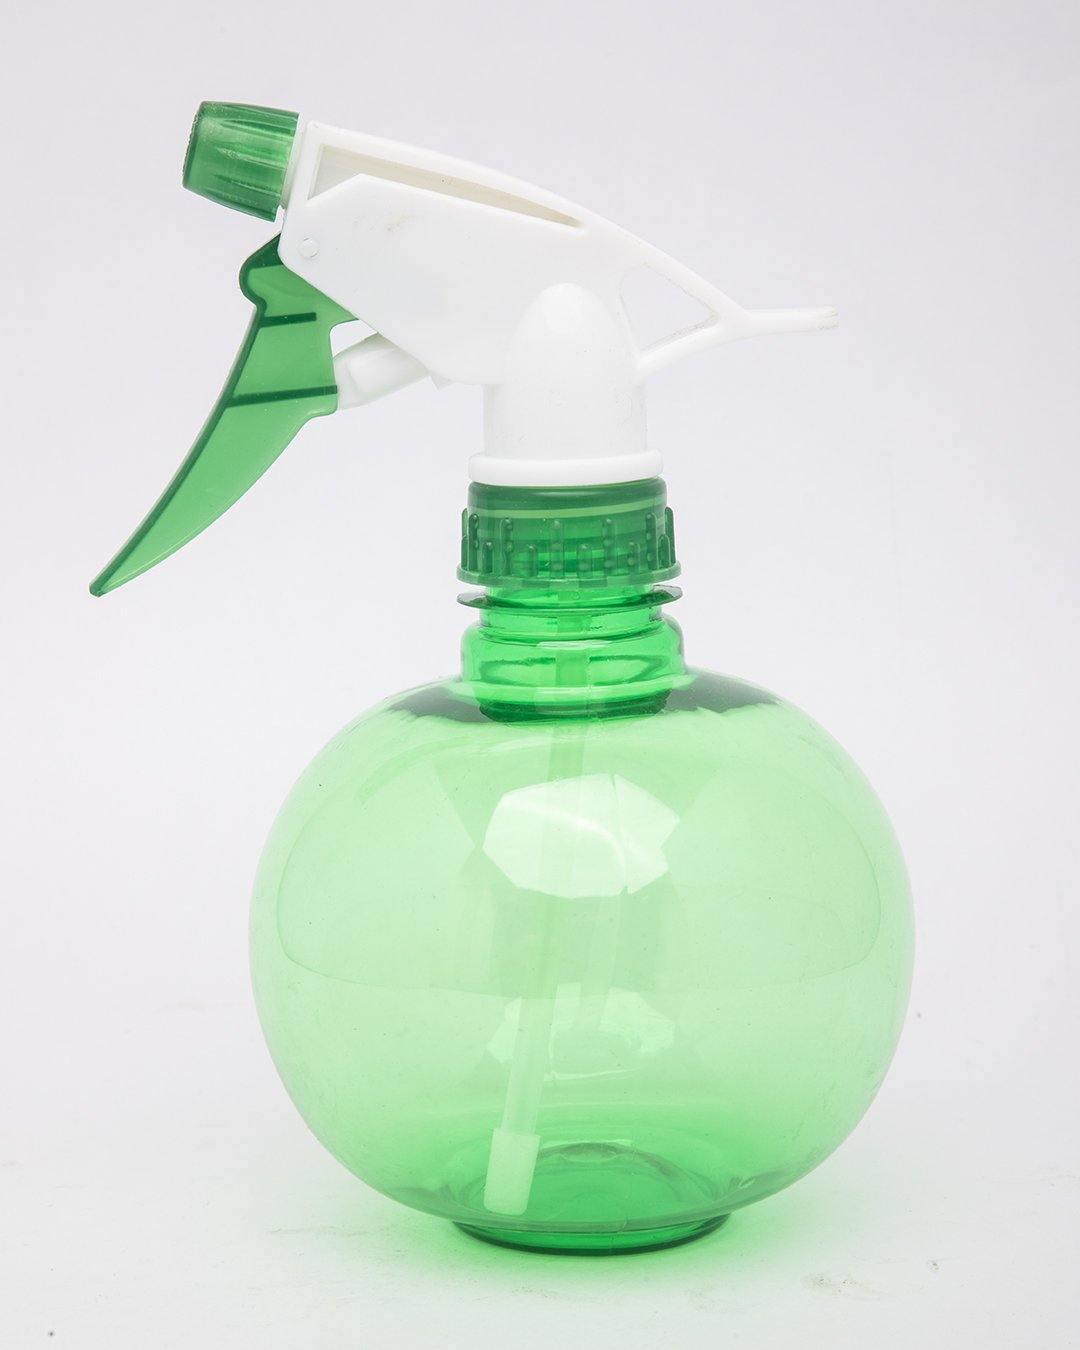 Spray Bottle, Green, Plastic, Set of 2, 450 mL - MARKET 99